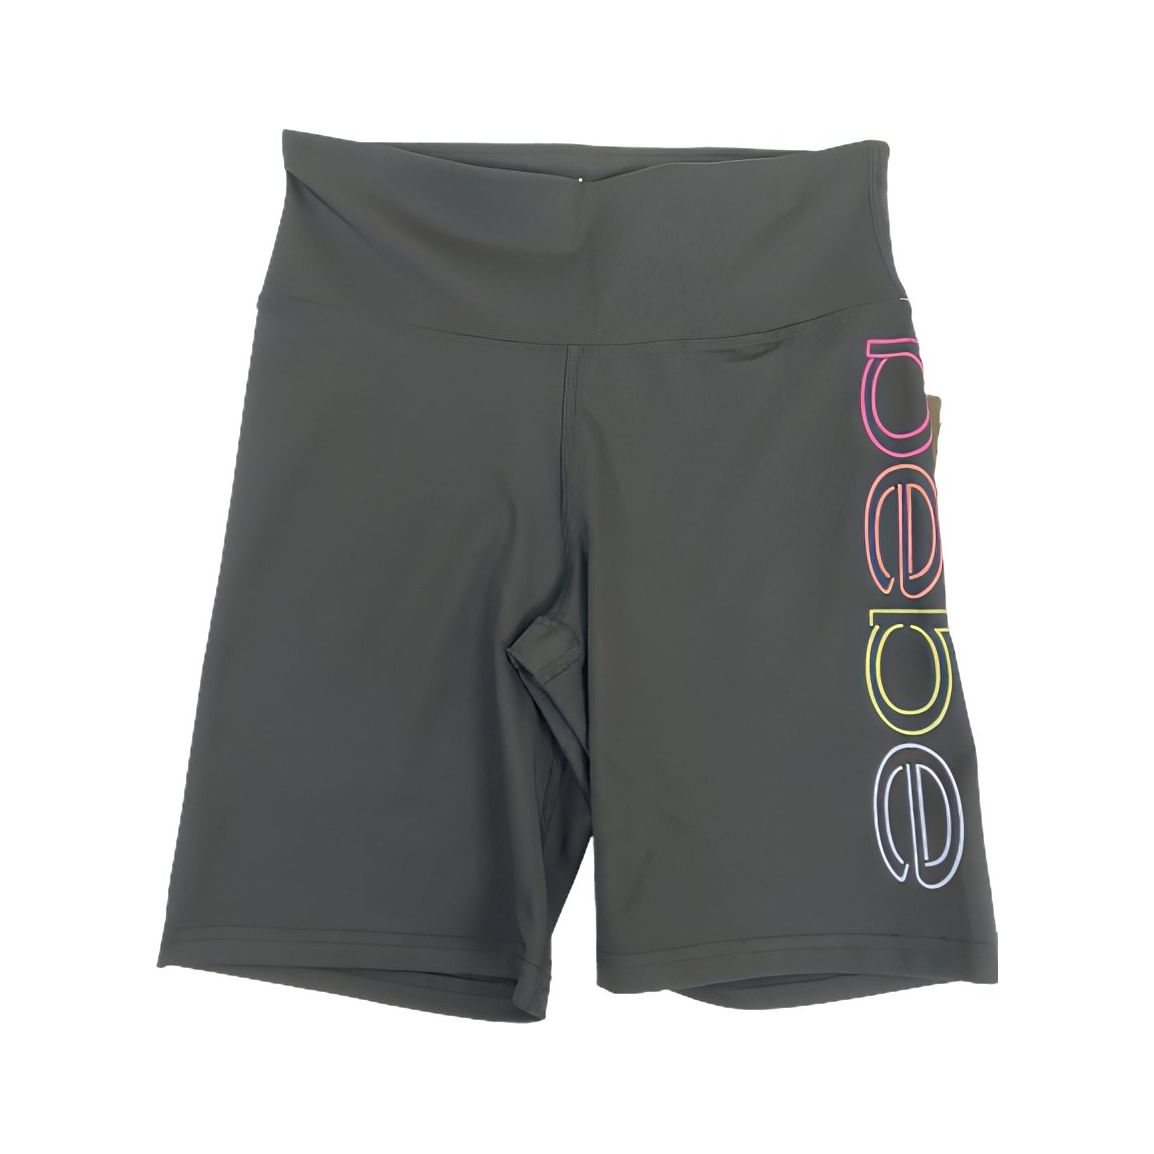 Bebe-bebe sport rainbow lites biker shorts for Women (Small) - Brandat Outlet